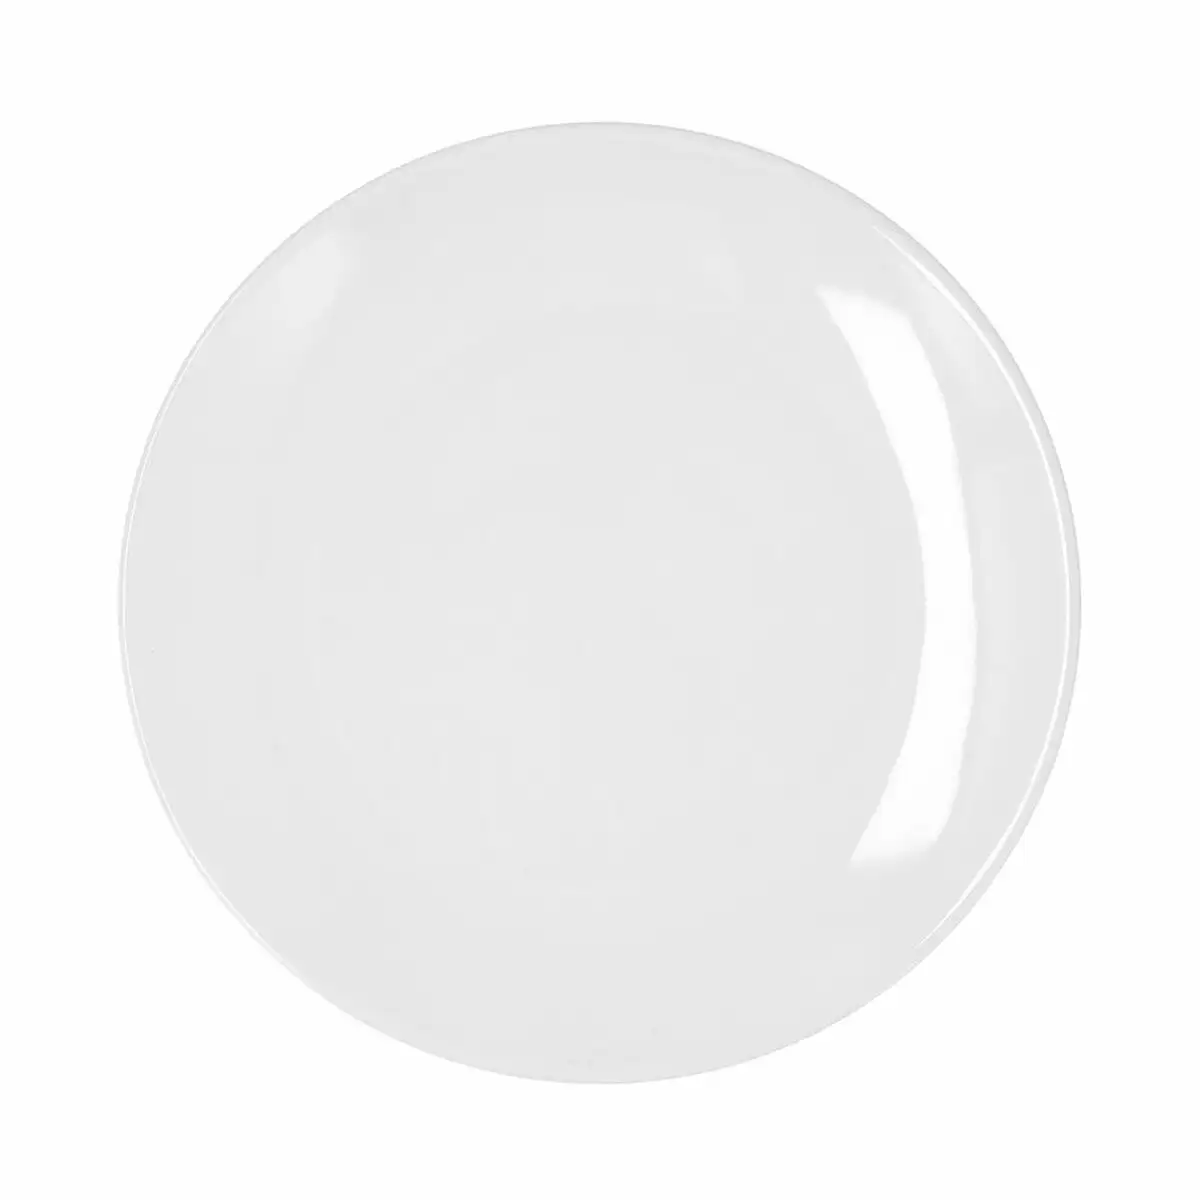 Assiette plate bidasoa glacial coupe ceramique blanc 27 cm pack 4x _8322. DIAYTAR SENEGAL - Où Choisir est une Découverte. Parcourez notre catalogue et trouvez des articles qui éveillent votre curiosité et enrichissent votre expérience shopping.